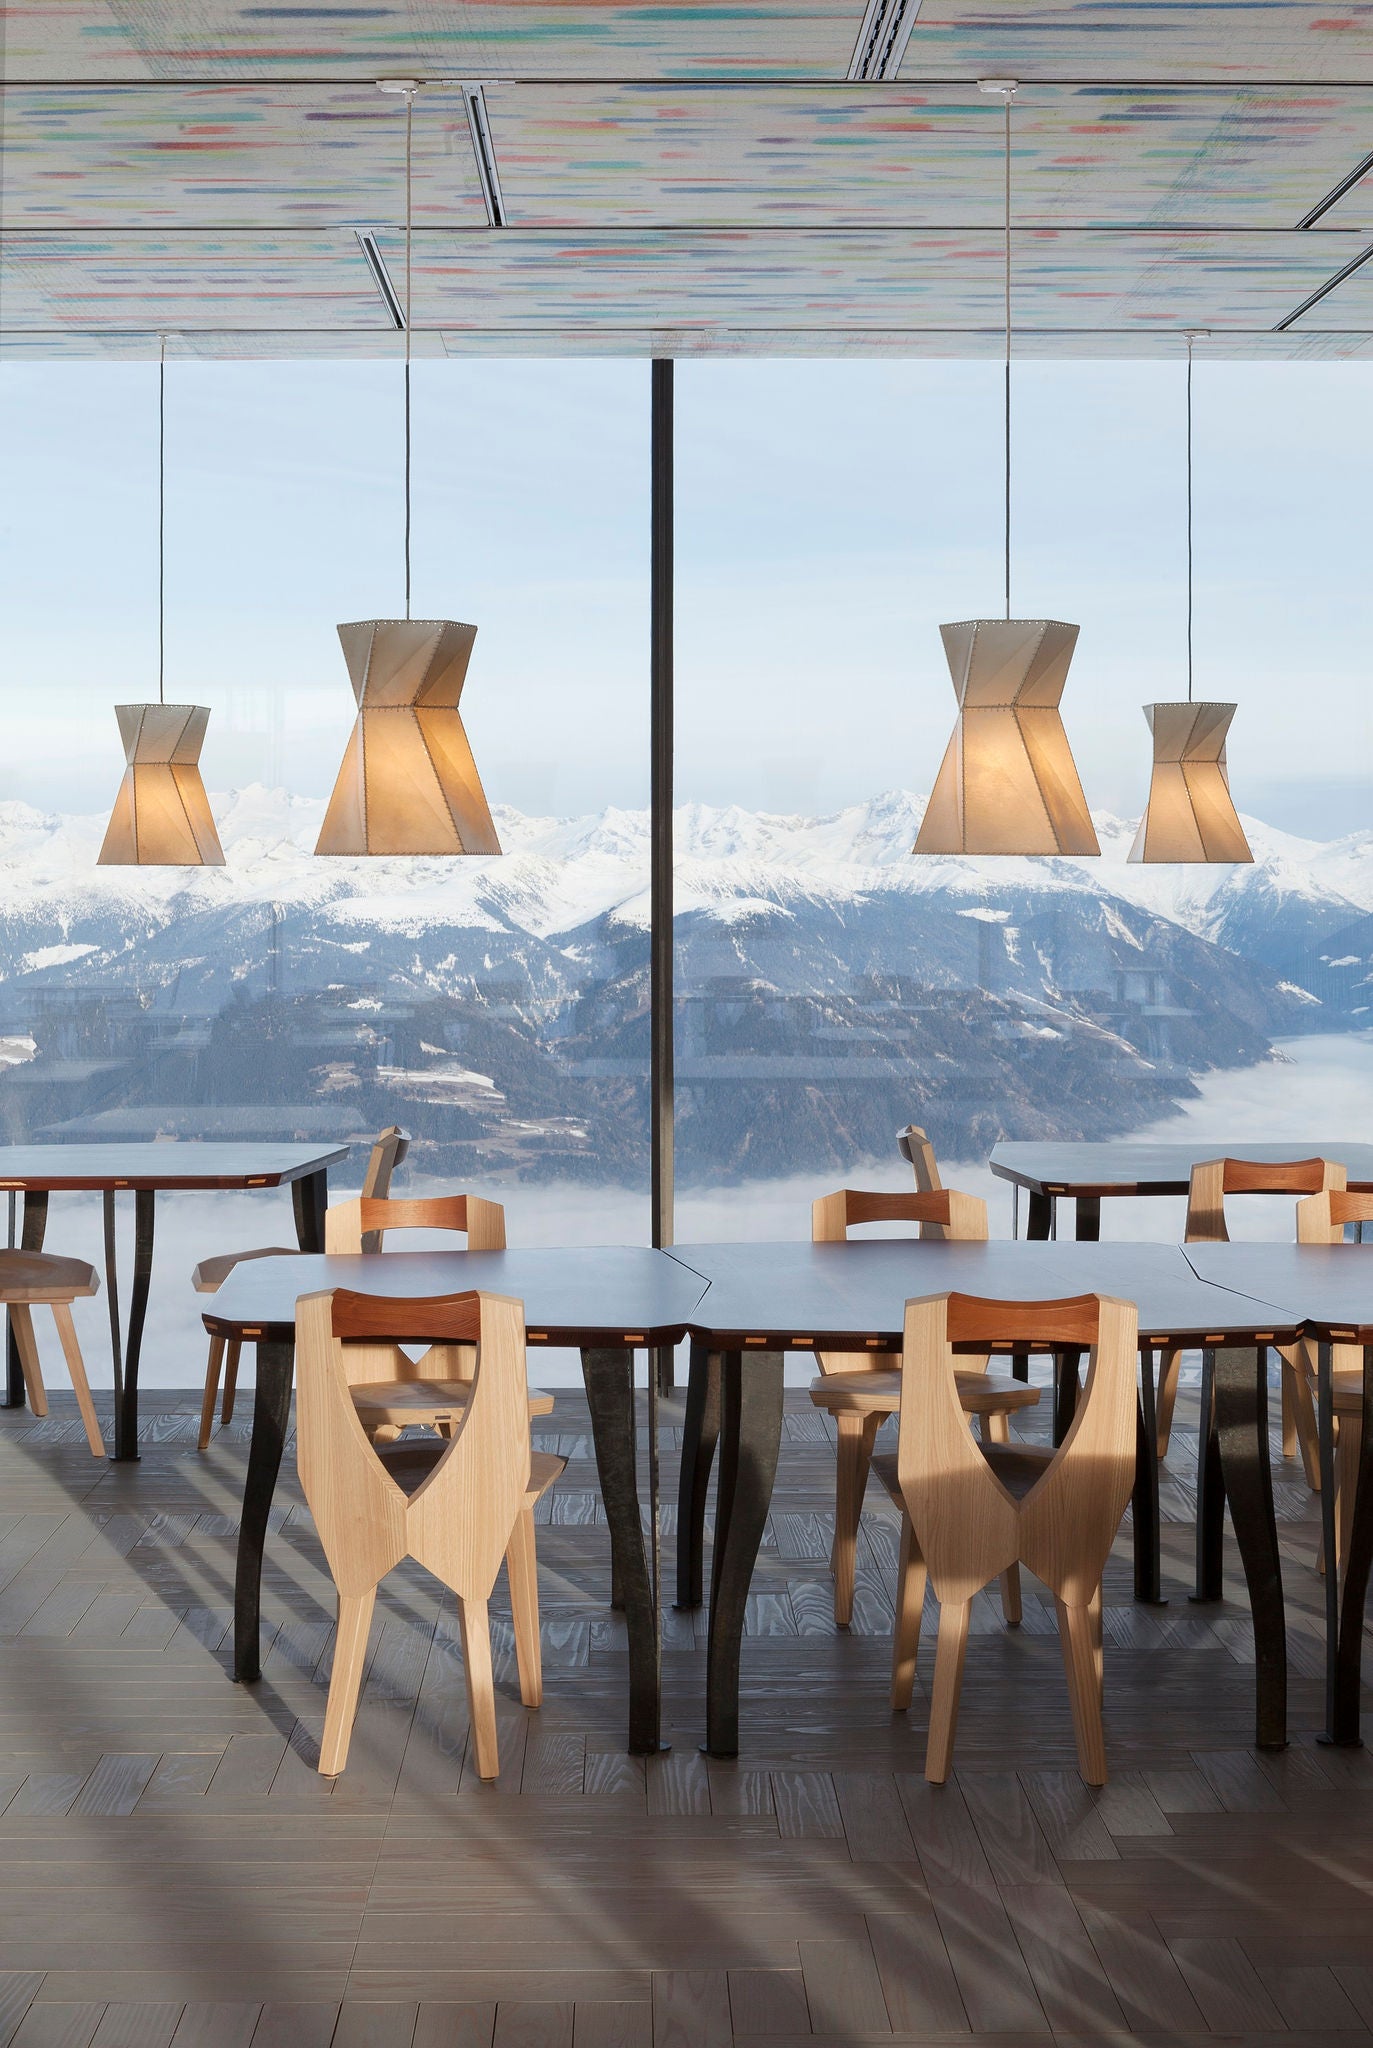 Moderne Einrichtung eines Restaurants mit Panorama auf die umliegenden Berge im Schnee